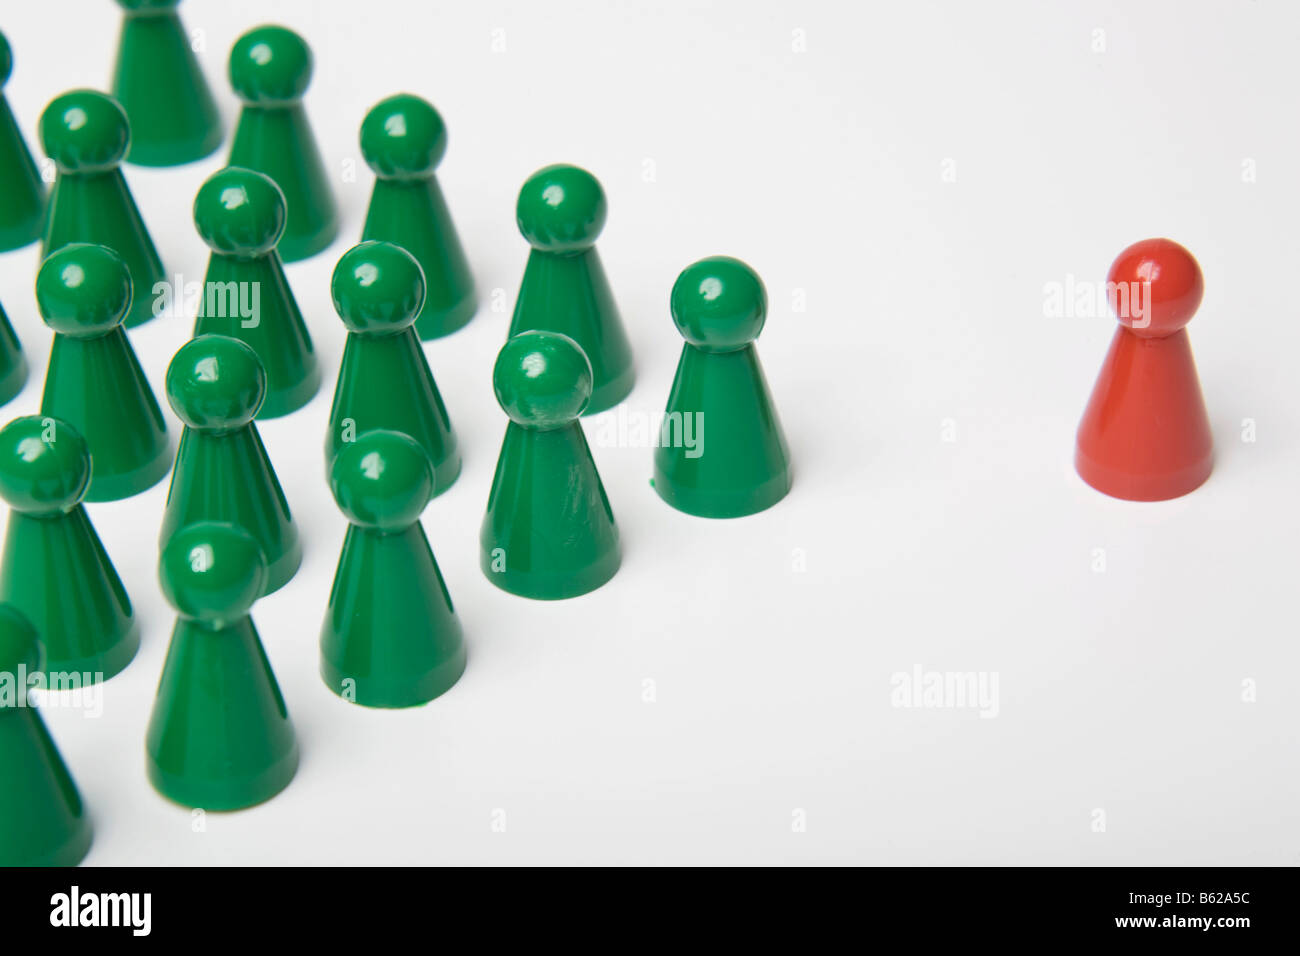 Pièces de jeu Vert debout à côté d'une seule pièce de jeu rouge, symbolique du leadership Banque D'Images